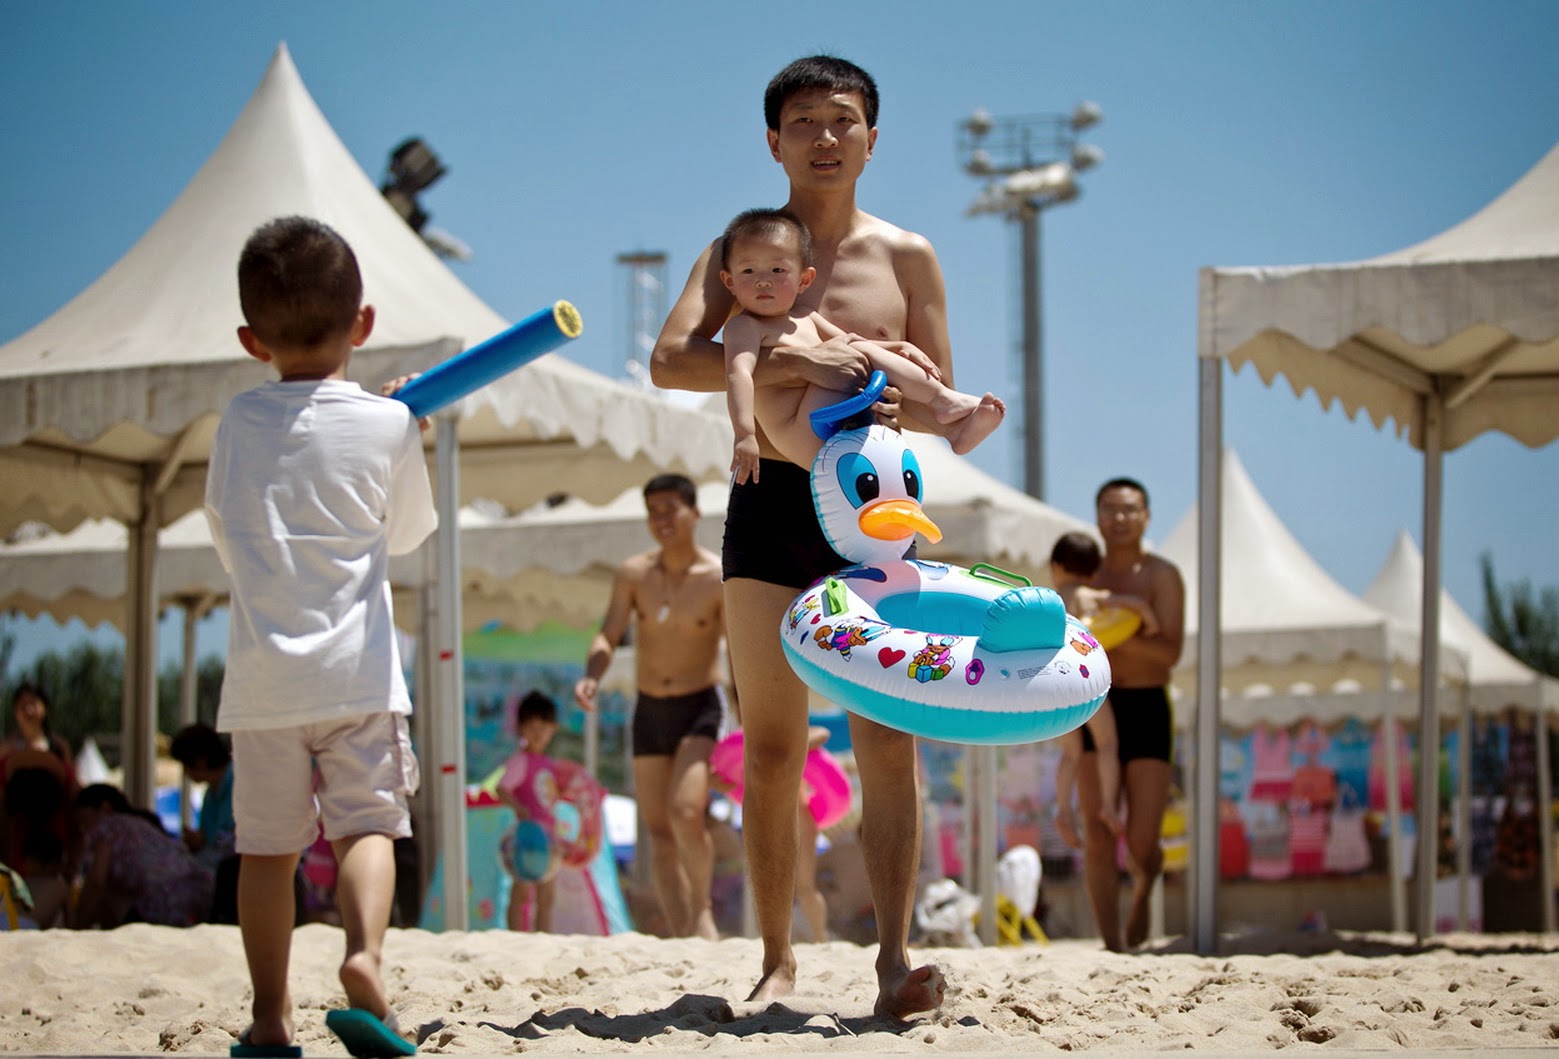 нудиский пляж с голыми детьми фото 86